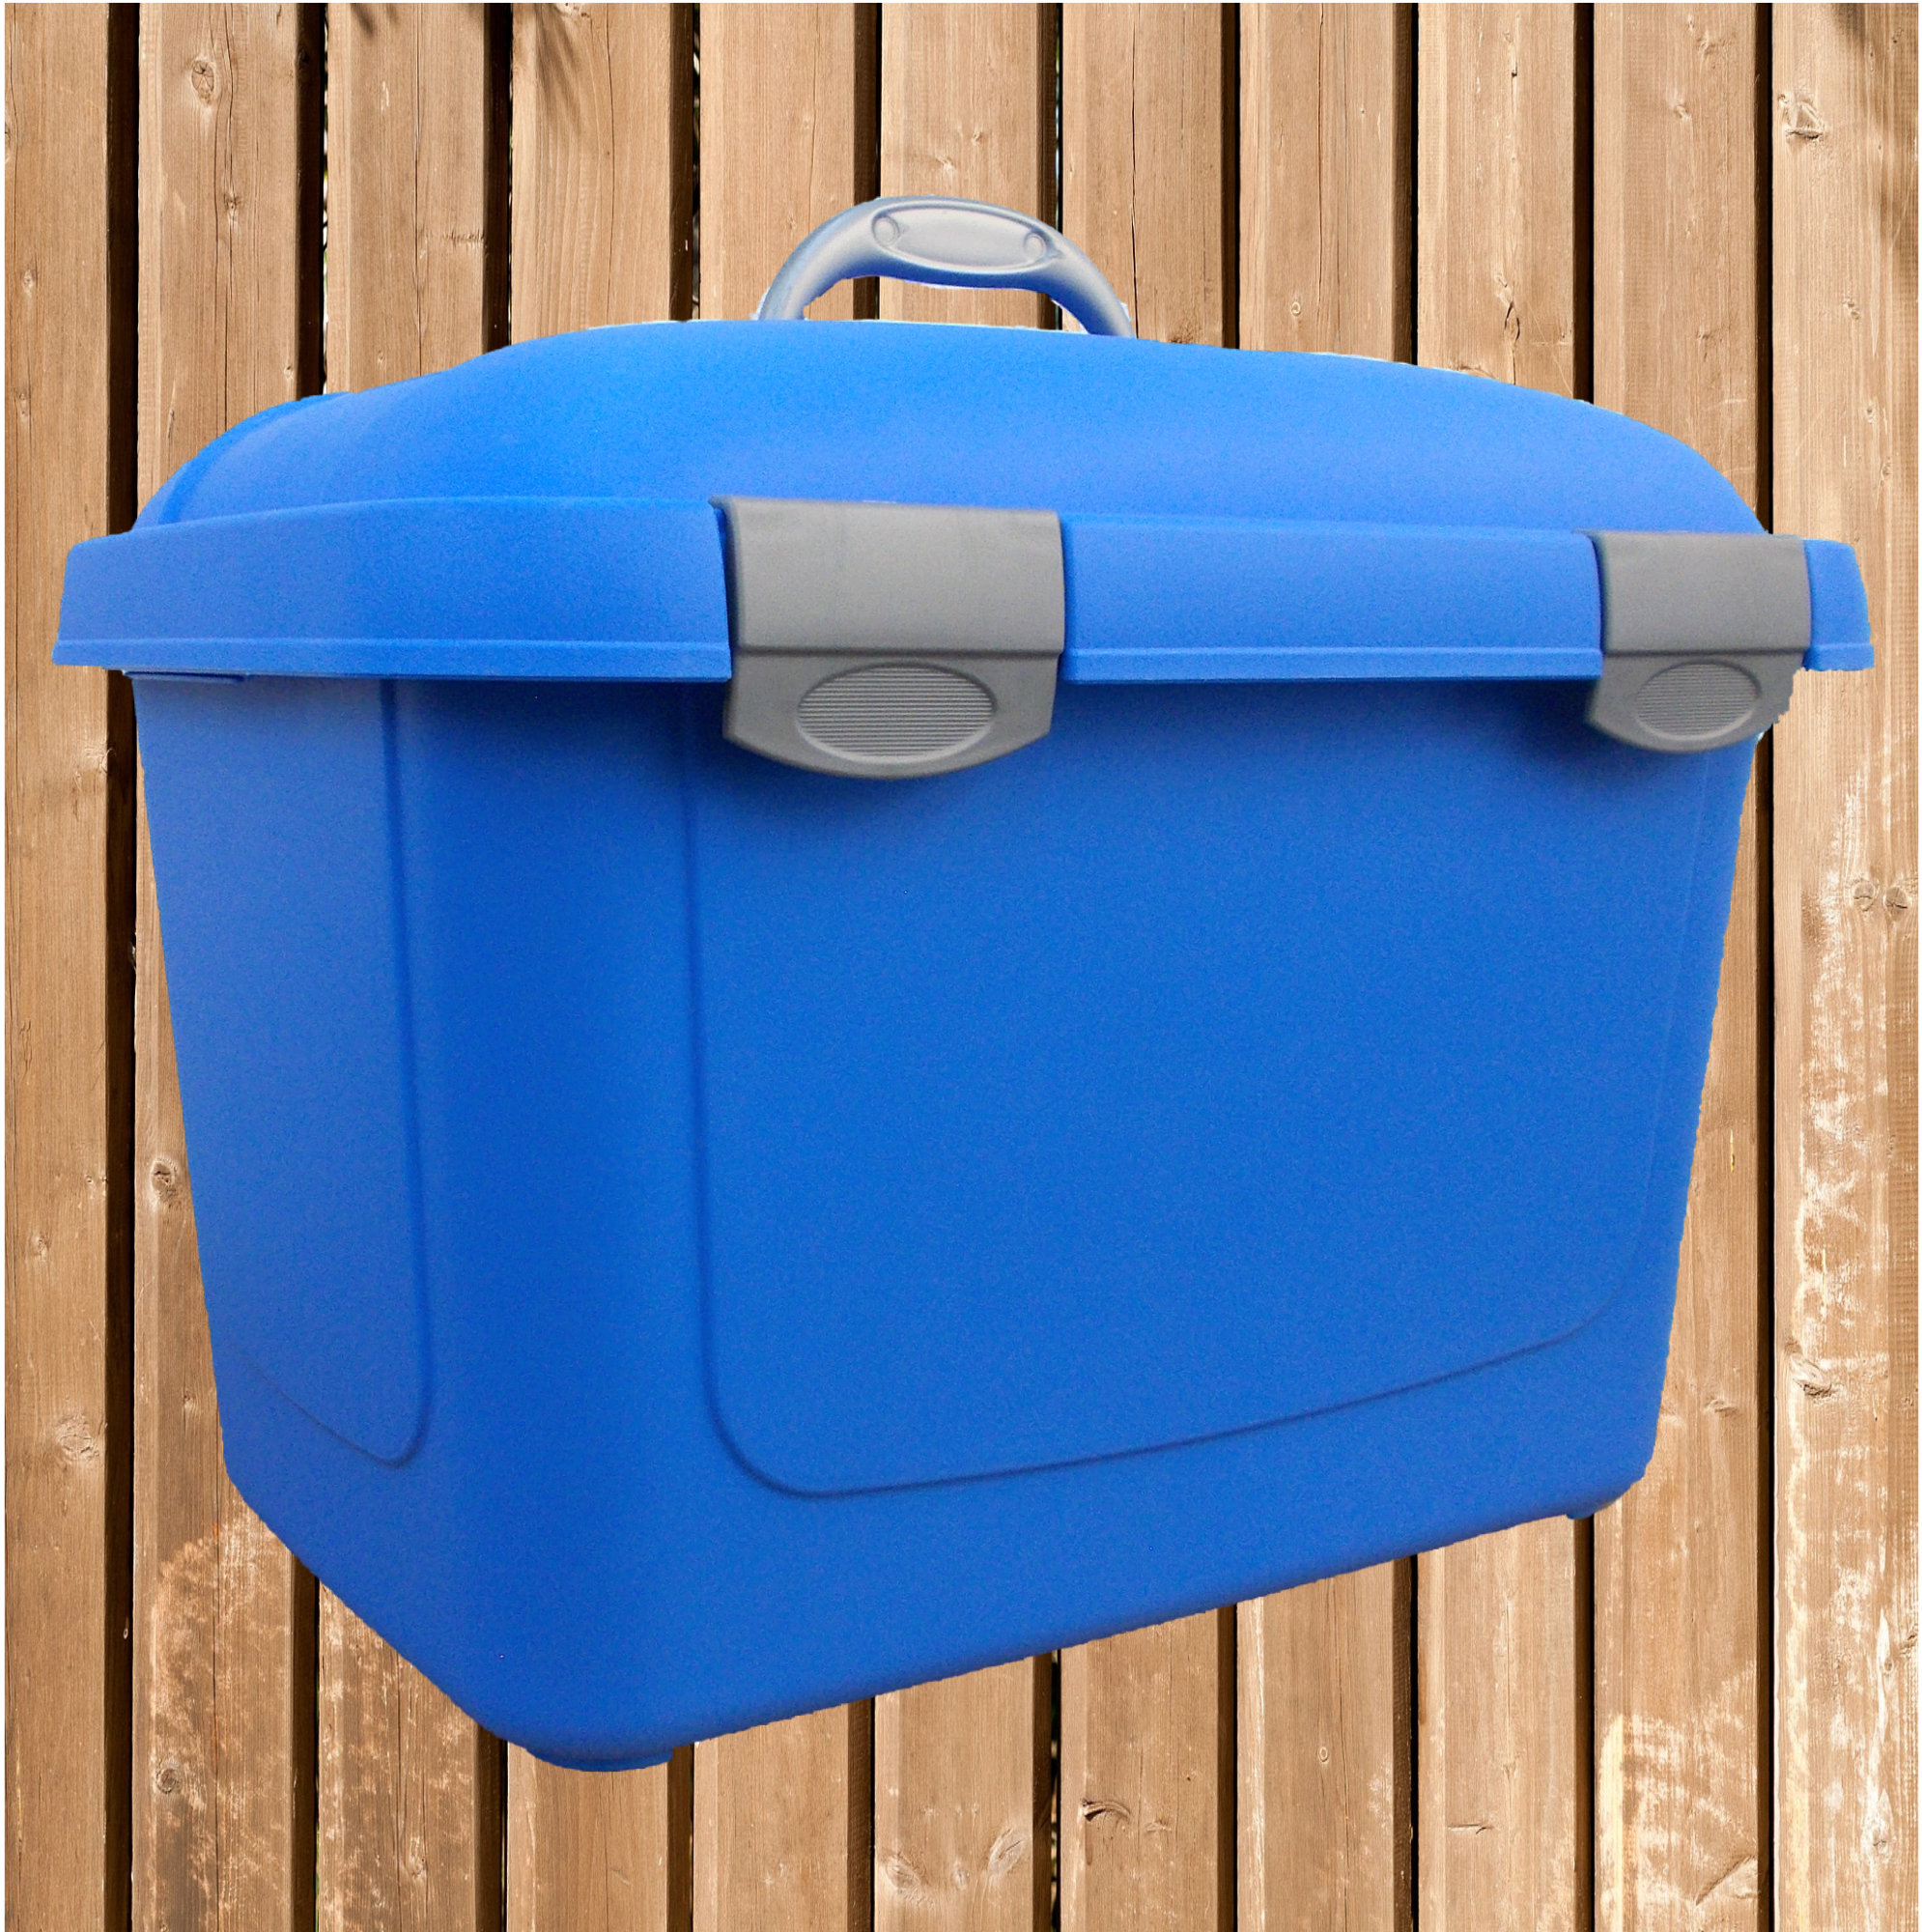 Putzbox, großer und geräumiger Putzkoffer aus Kunststoff